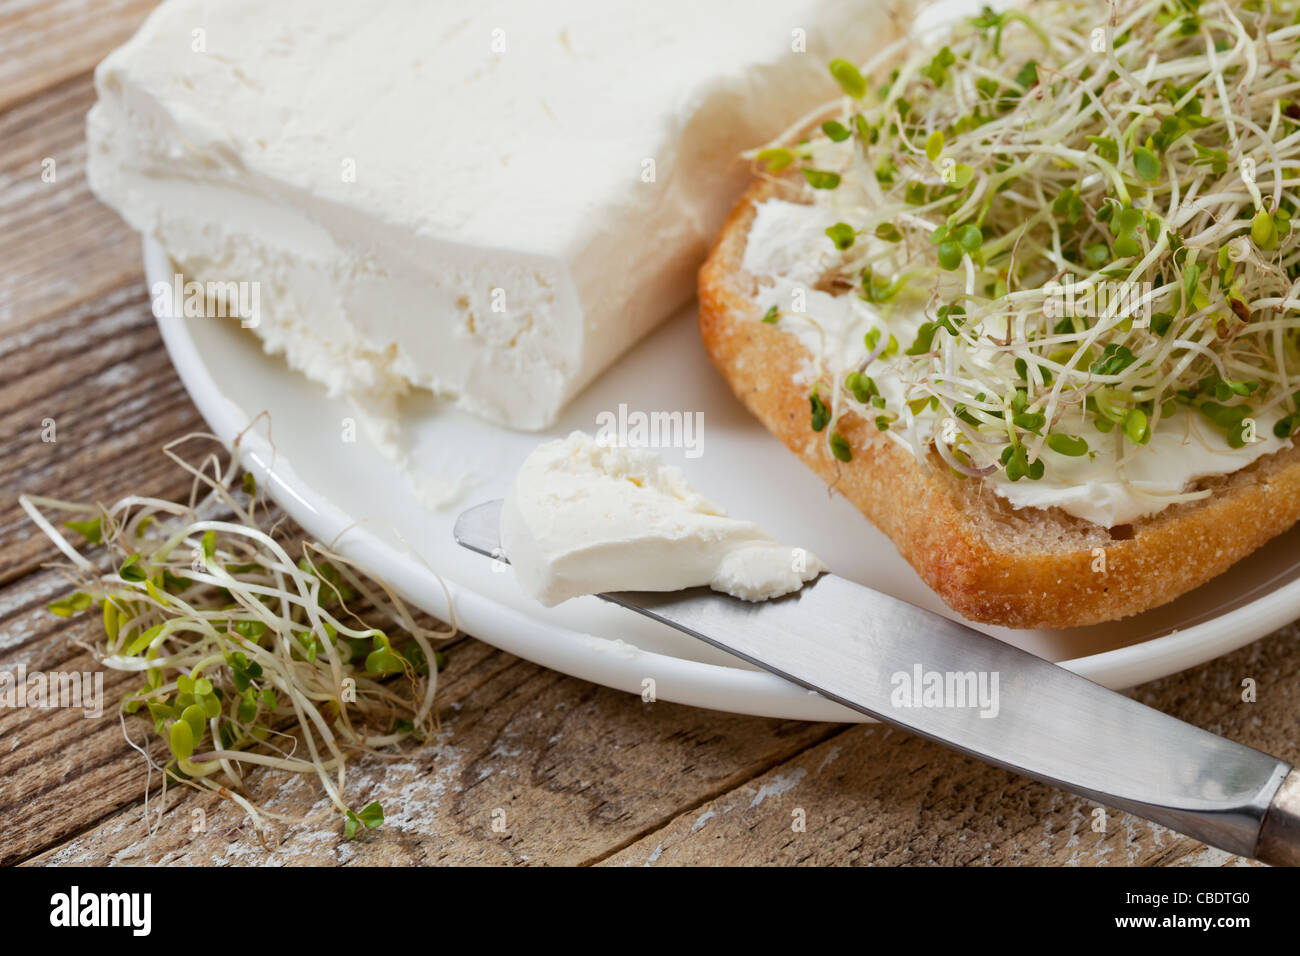 Desayuno saludable concepto - un rollo con crema de queso y brócoli Foto de stock